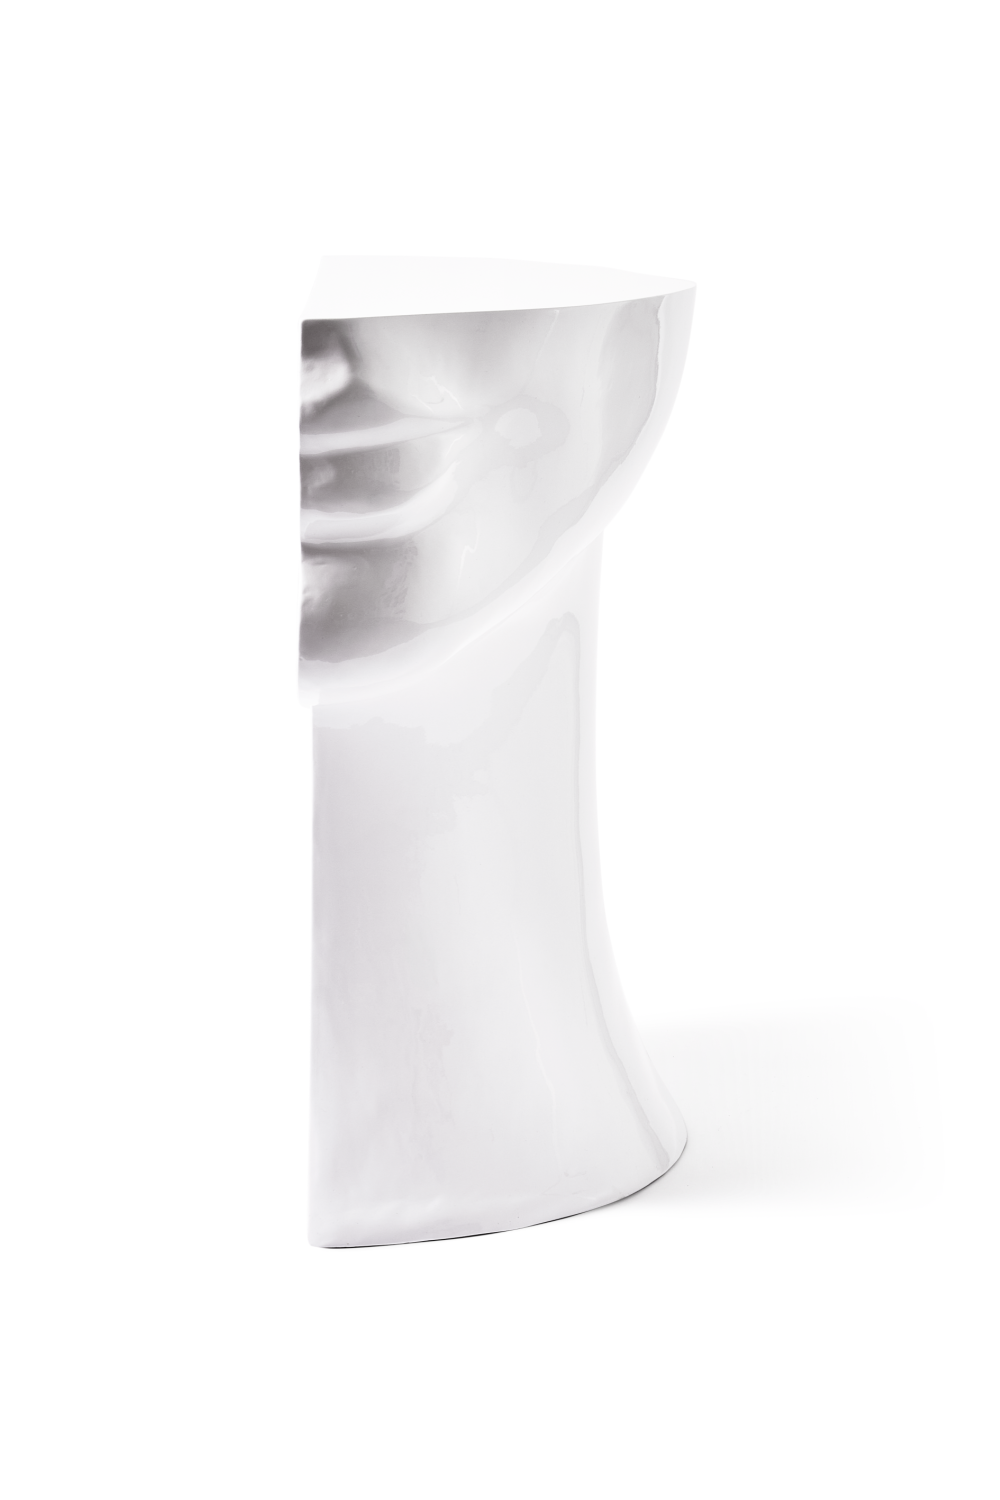 White Sculptural Chin Coffee Table | Pols Potten Head Right | Oroatrade.com